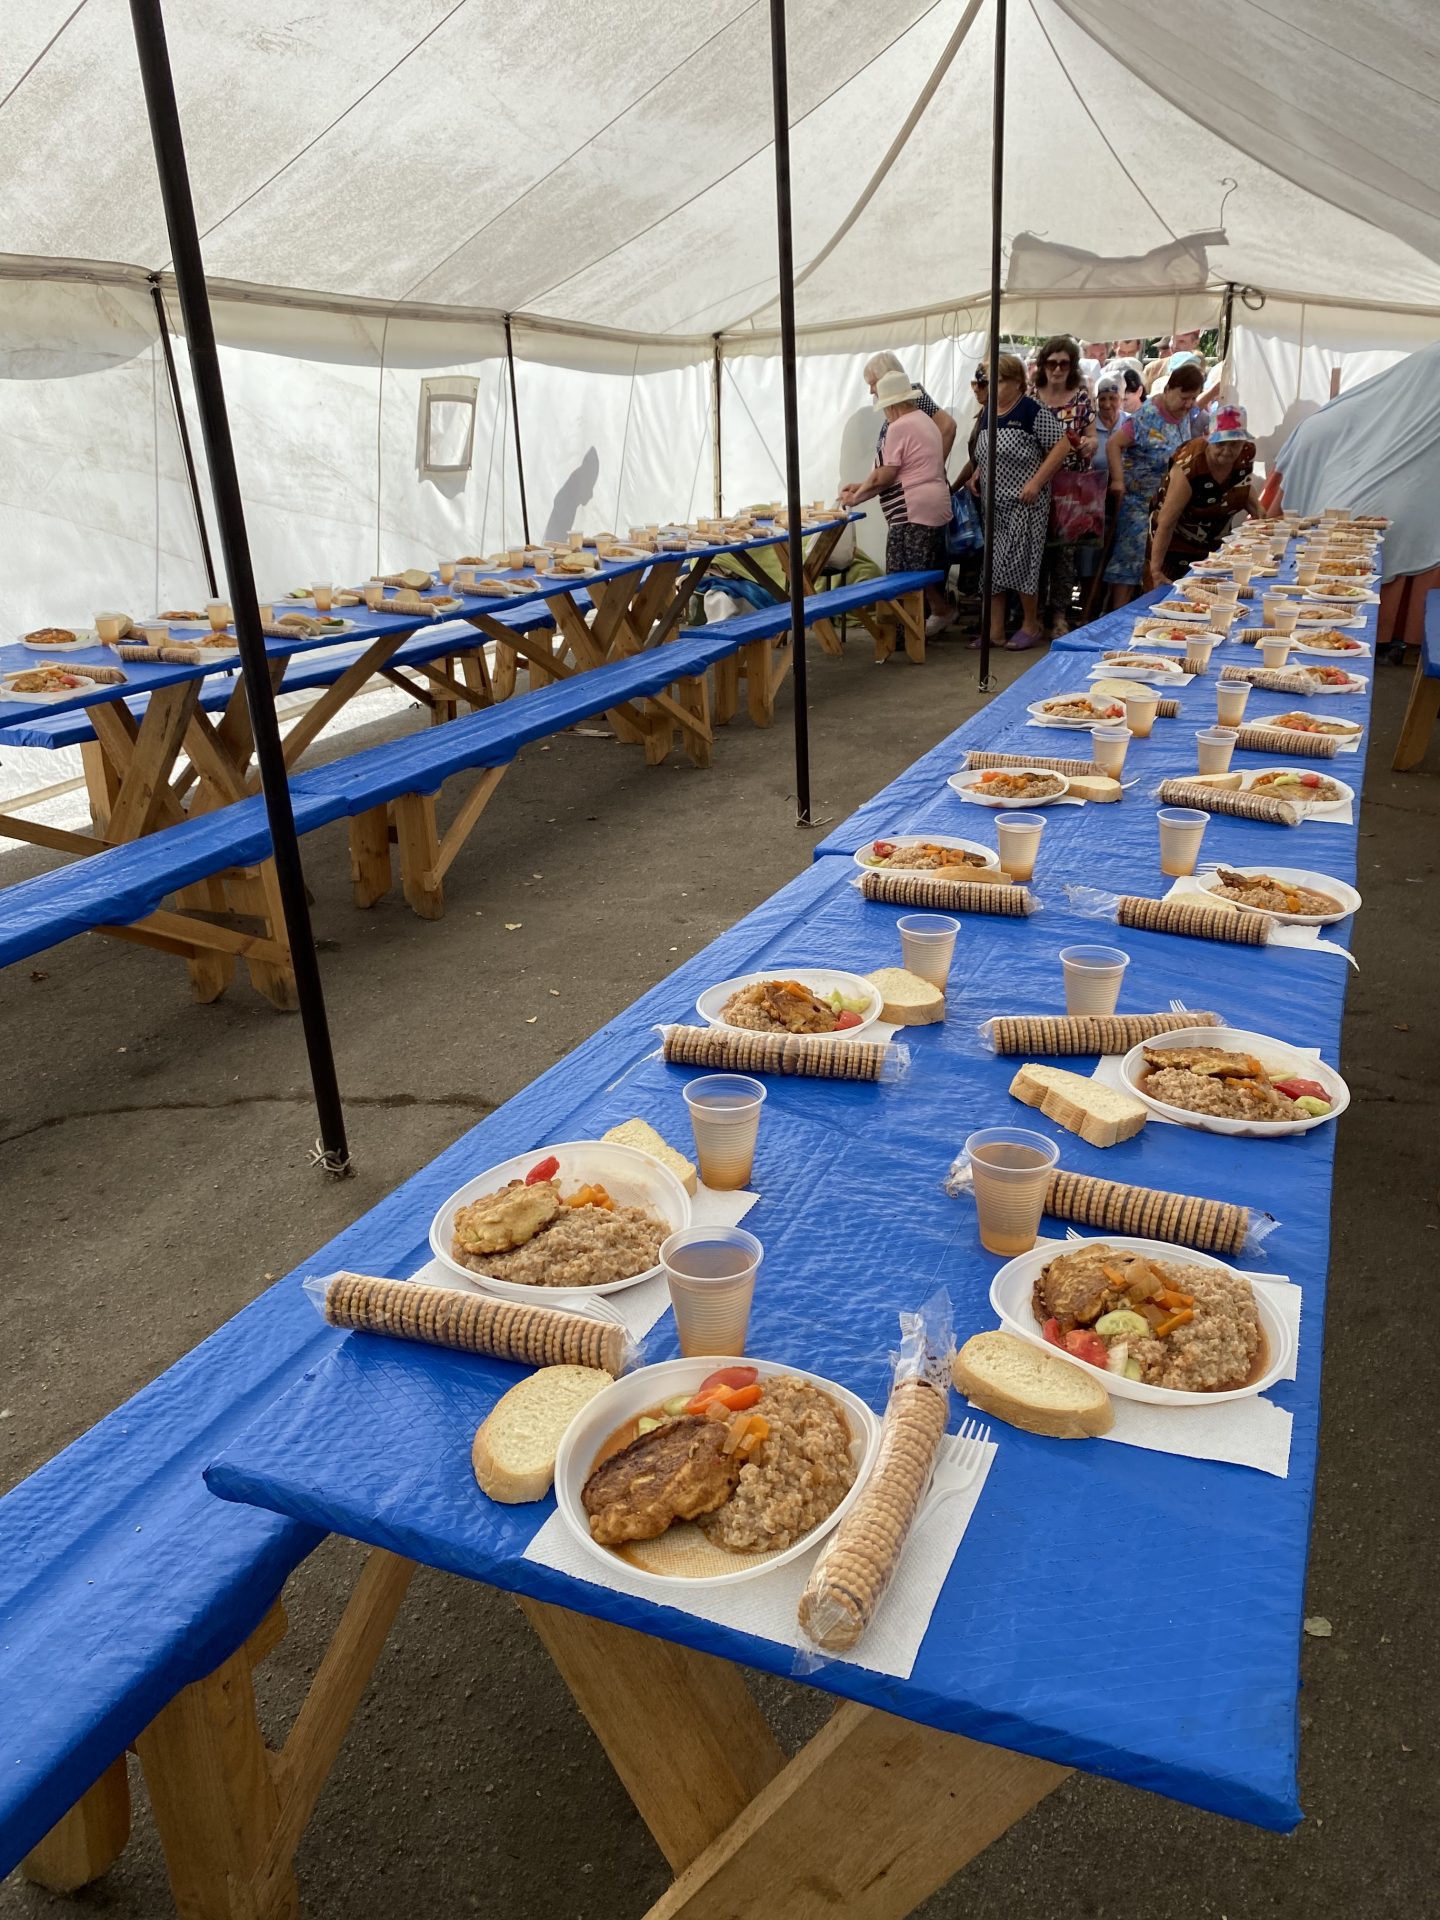 Ukraine Tables of food